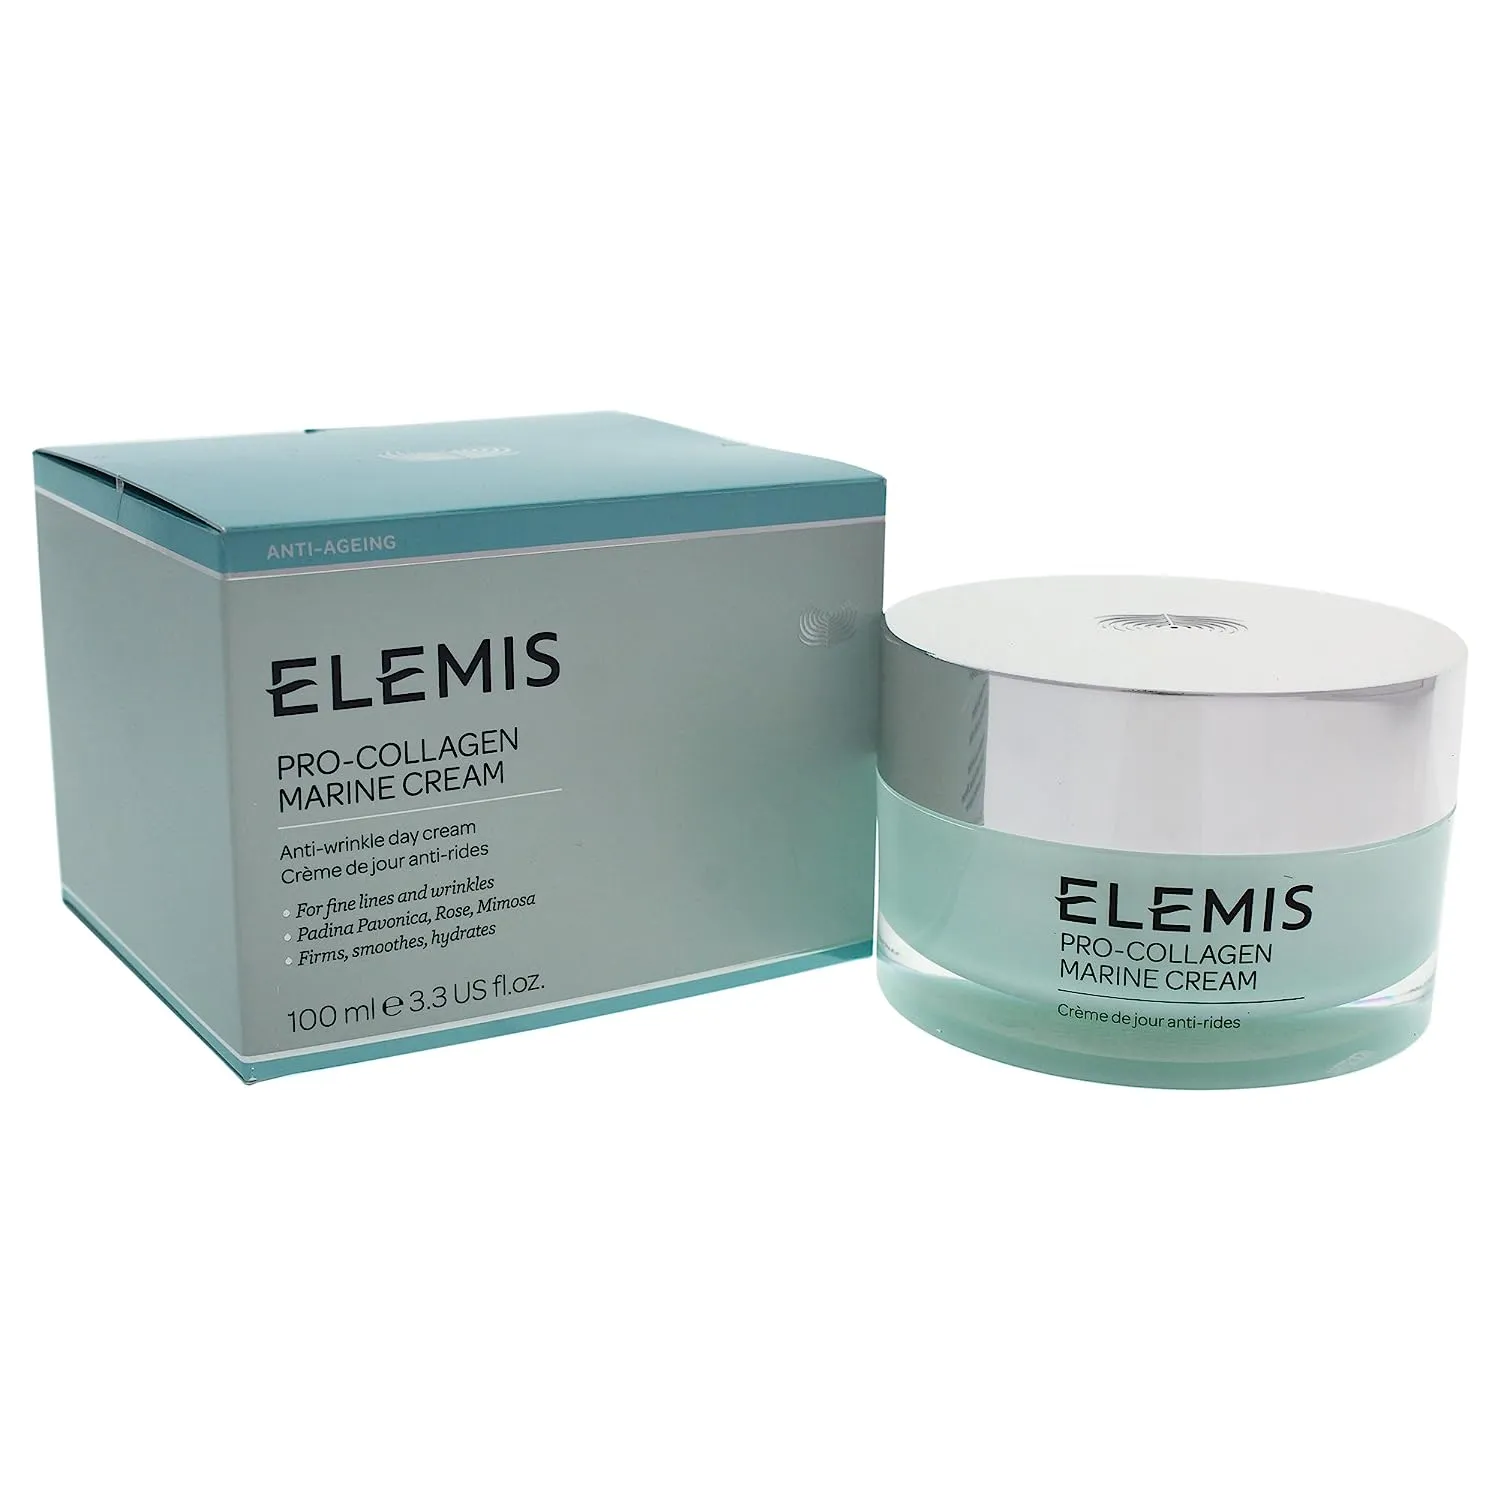 1. ELEMIS Pro-Collagen Marine Cream